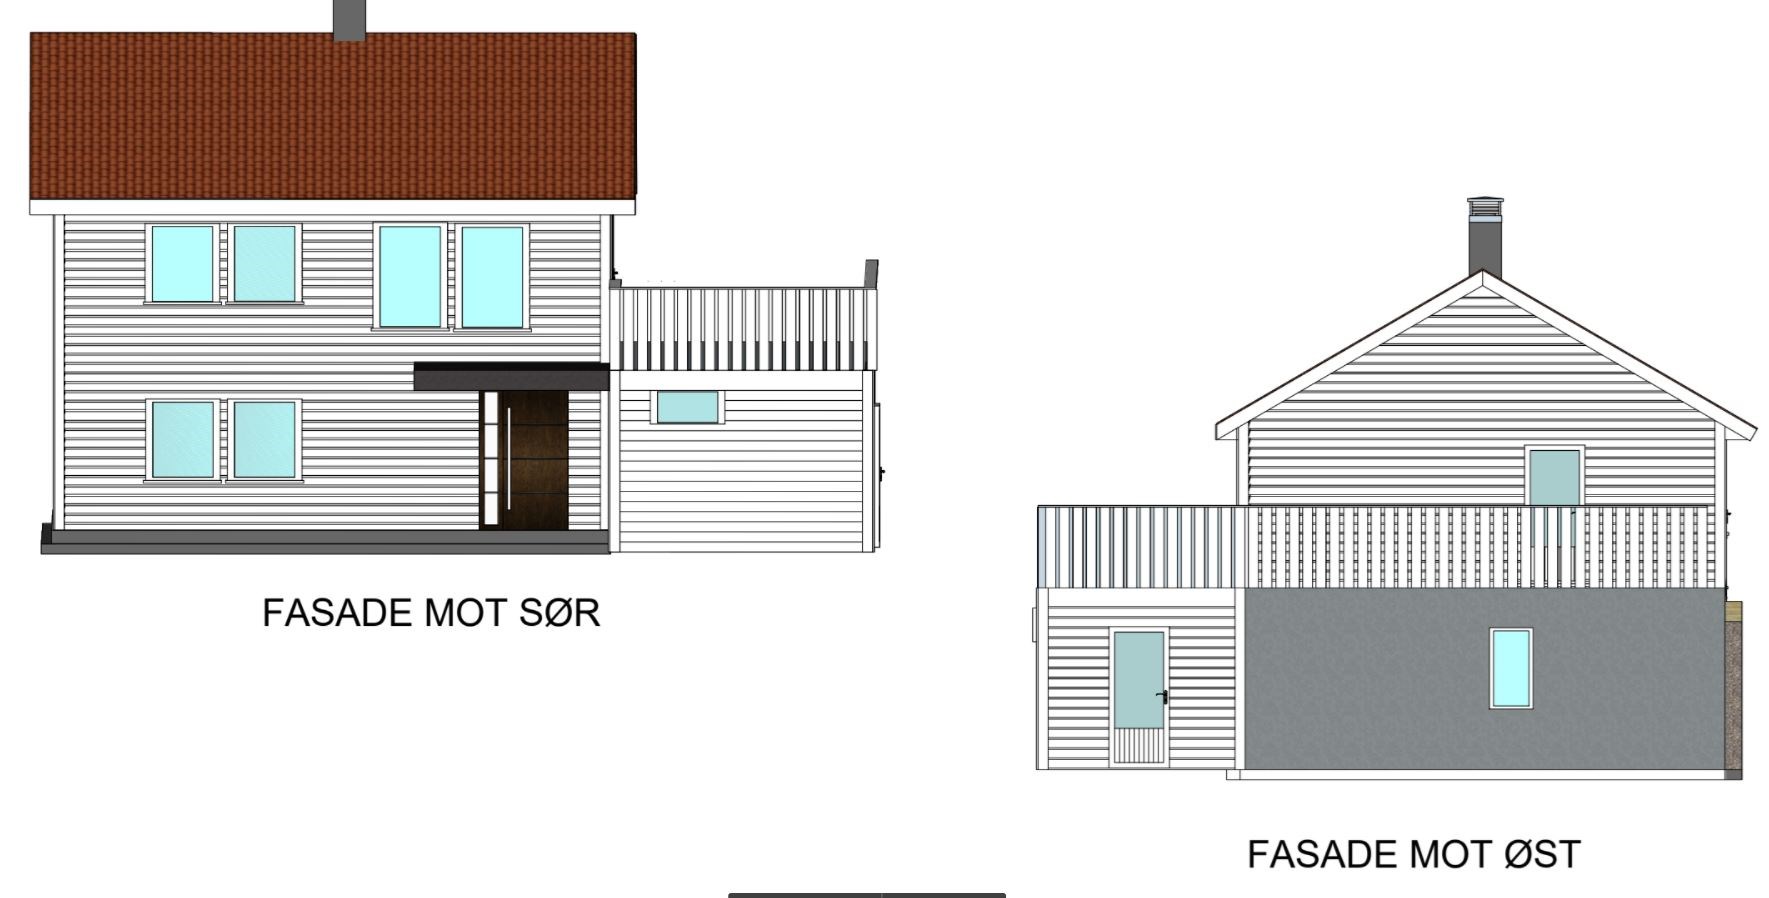 Tilbygg med terrasse over oppvarmet bygning - Tak og konstruksjon - trenger innspill - Ny fasade.JPG - Papir